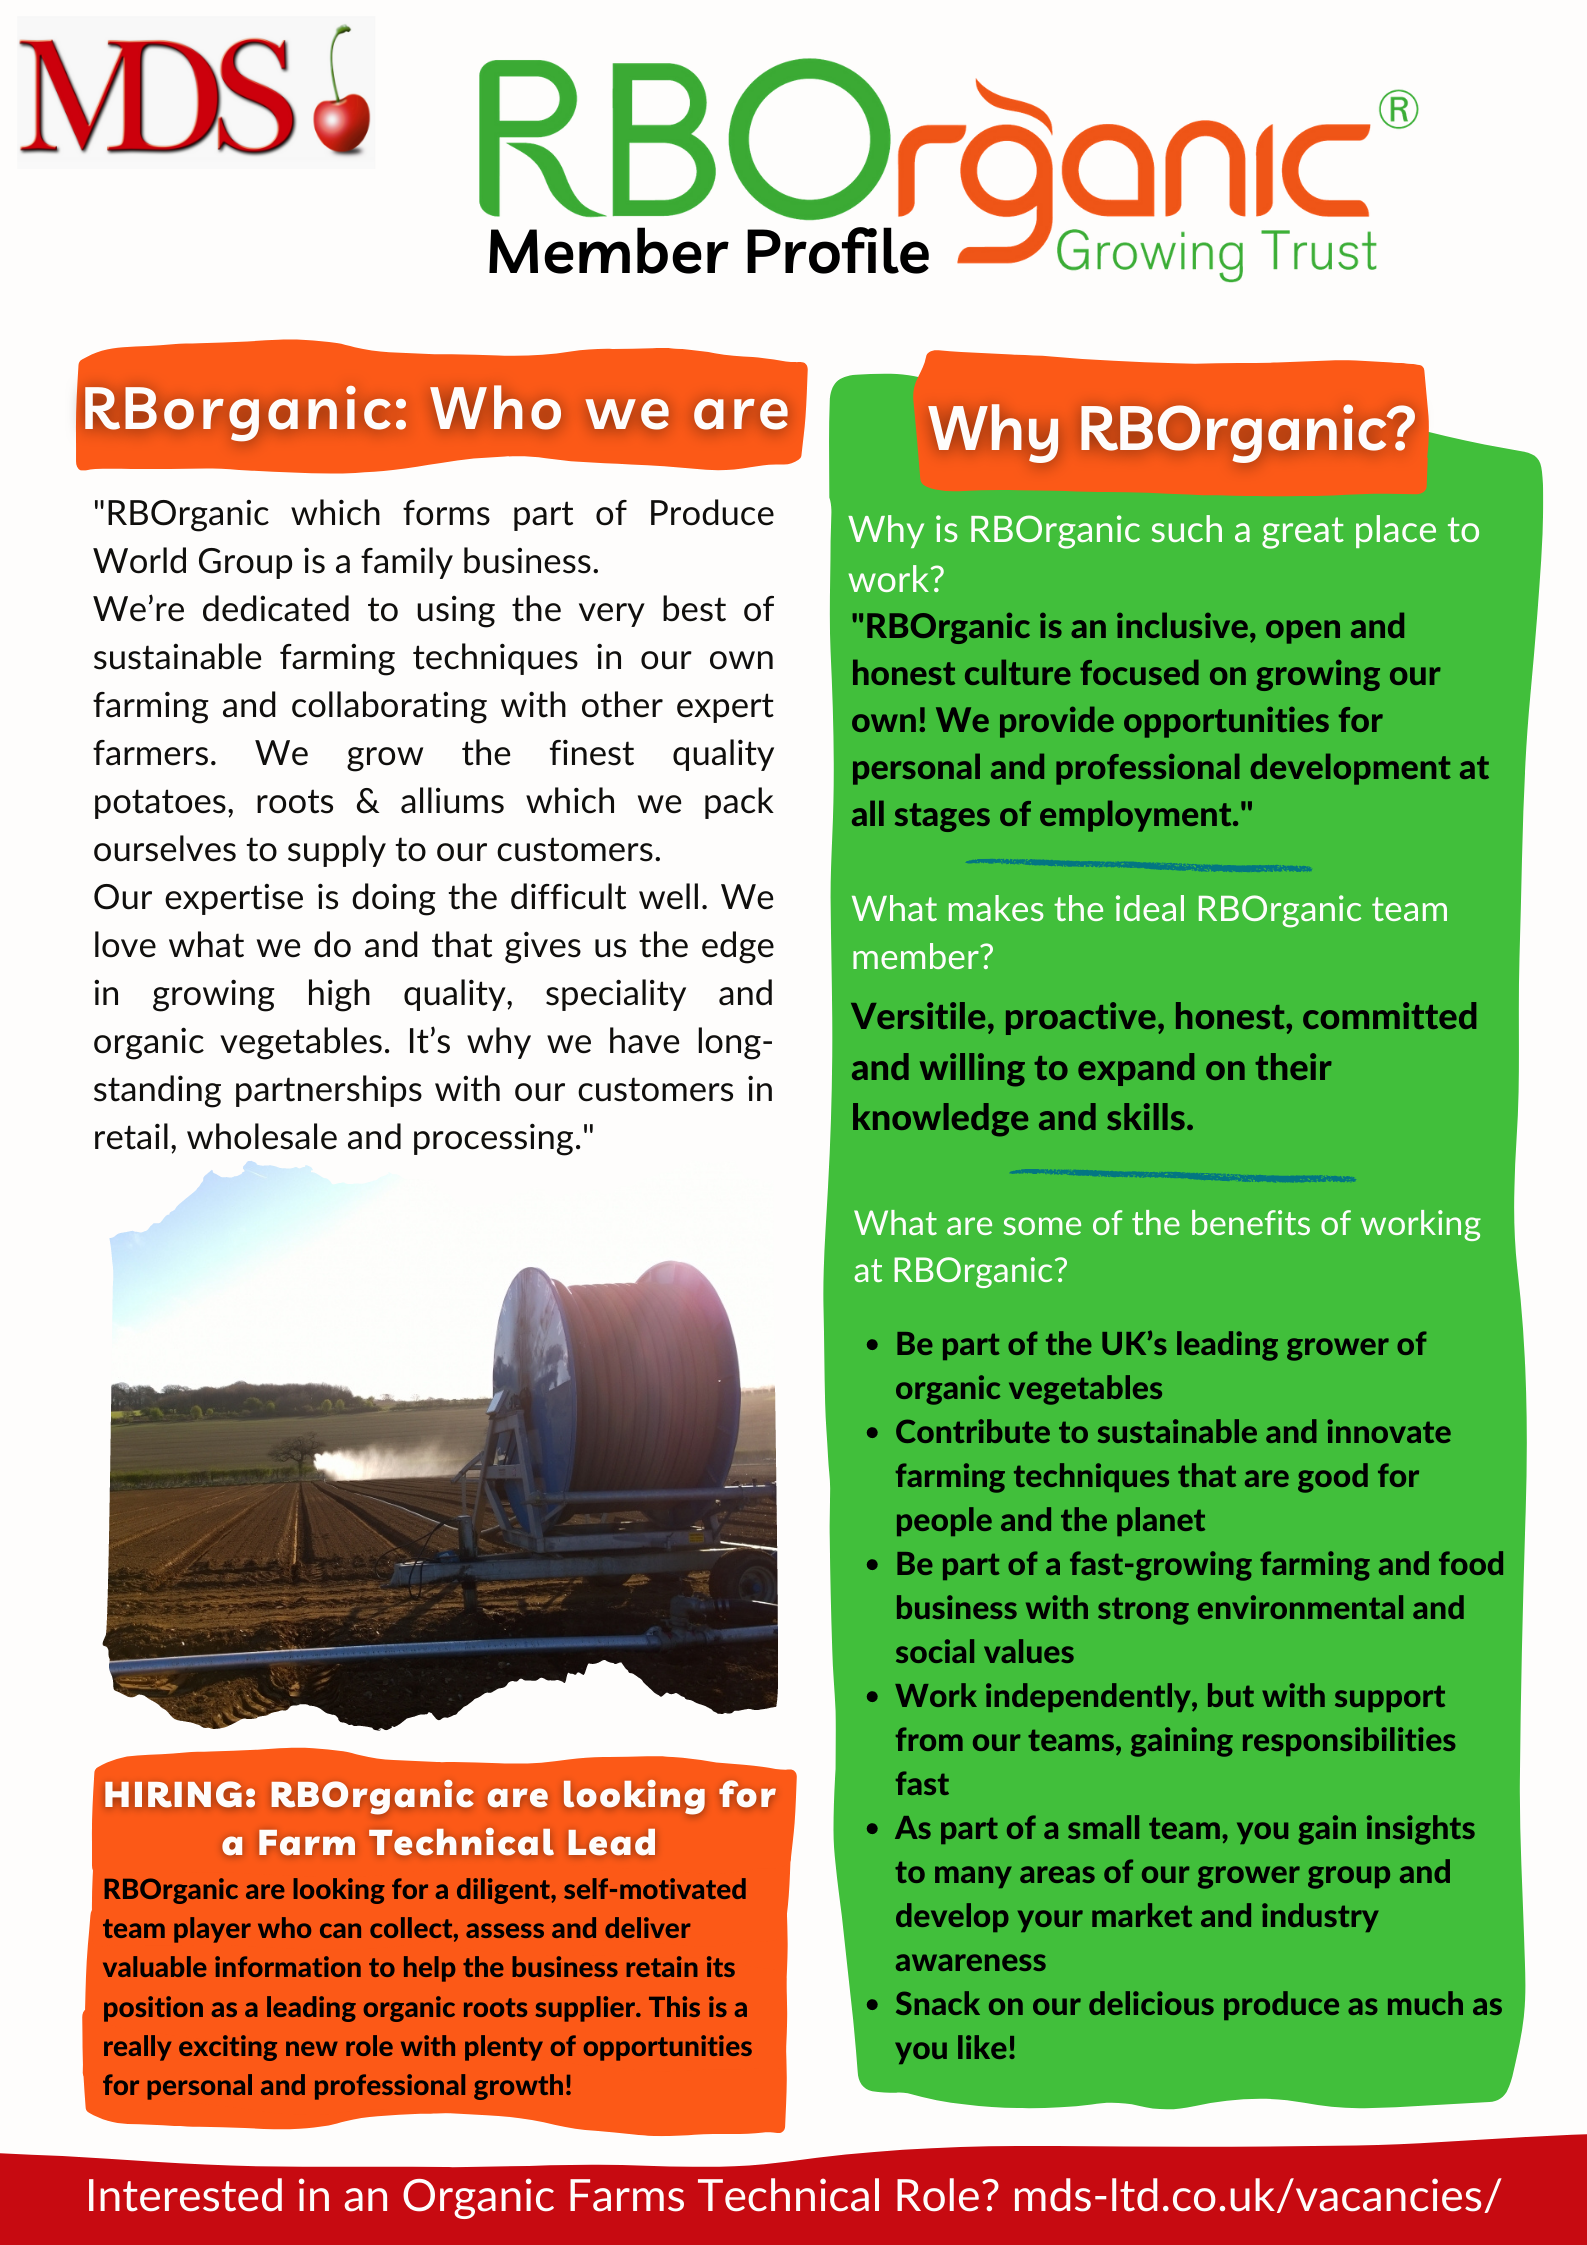 RBOrganic: Member Profile